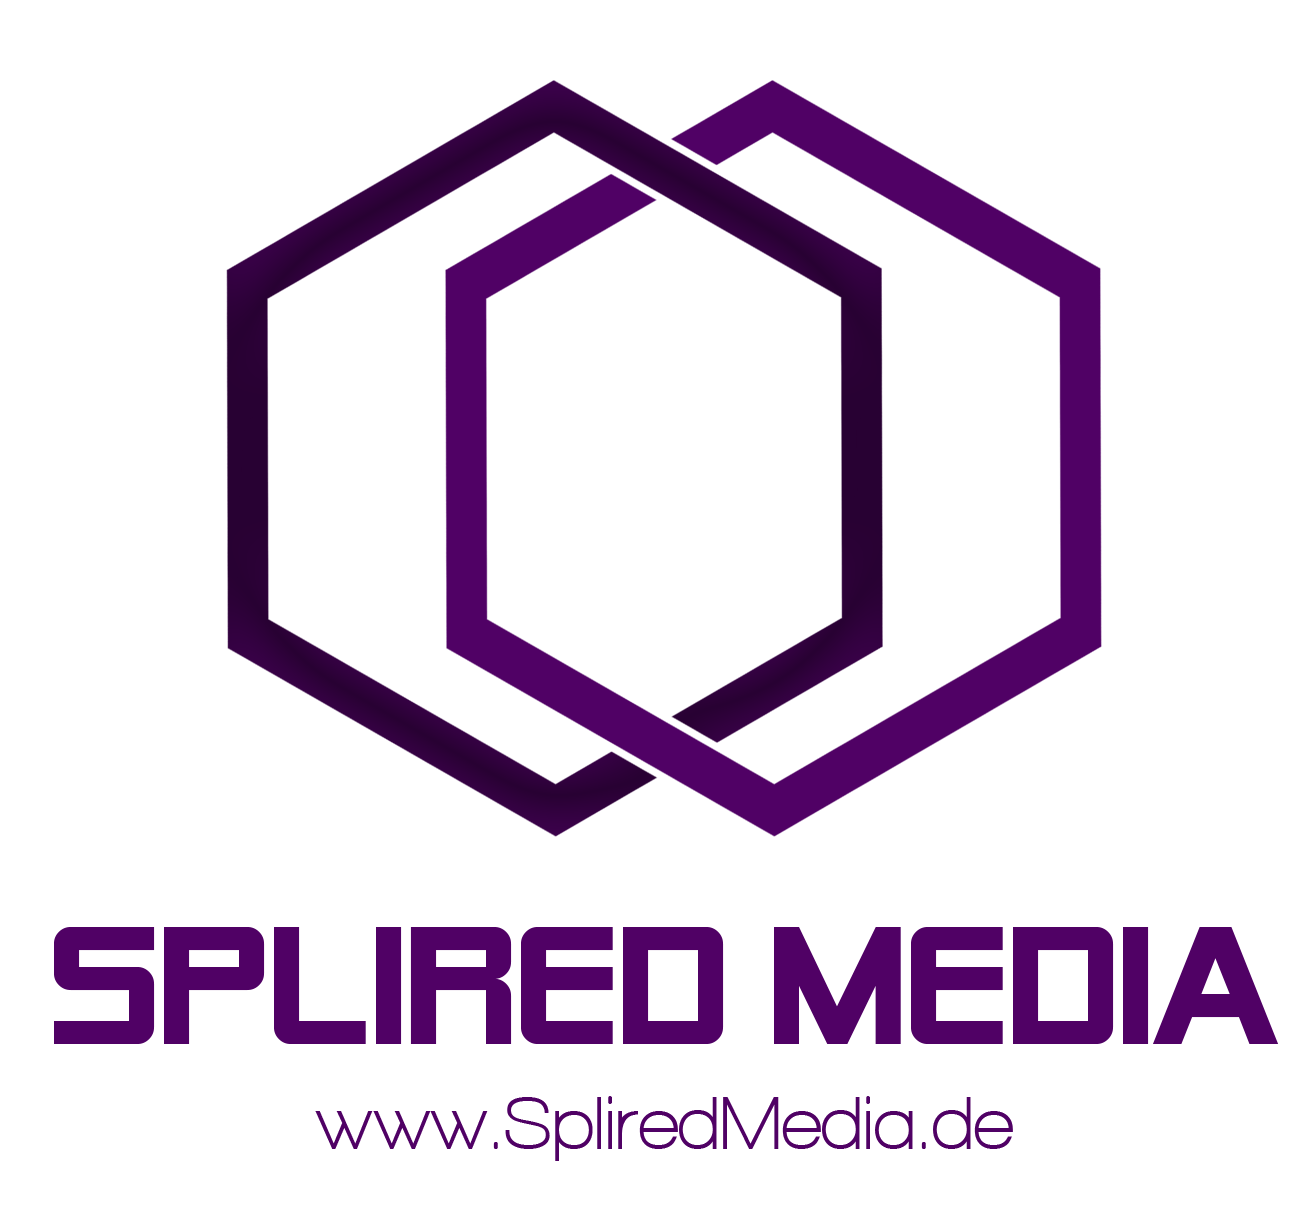 Splired Media